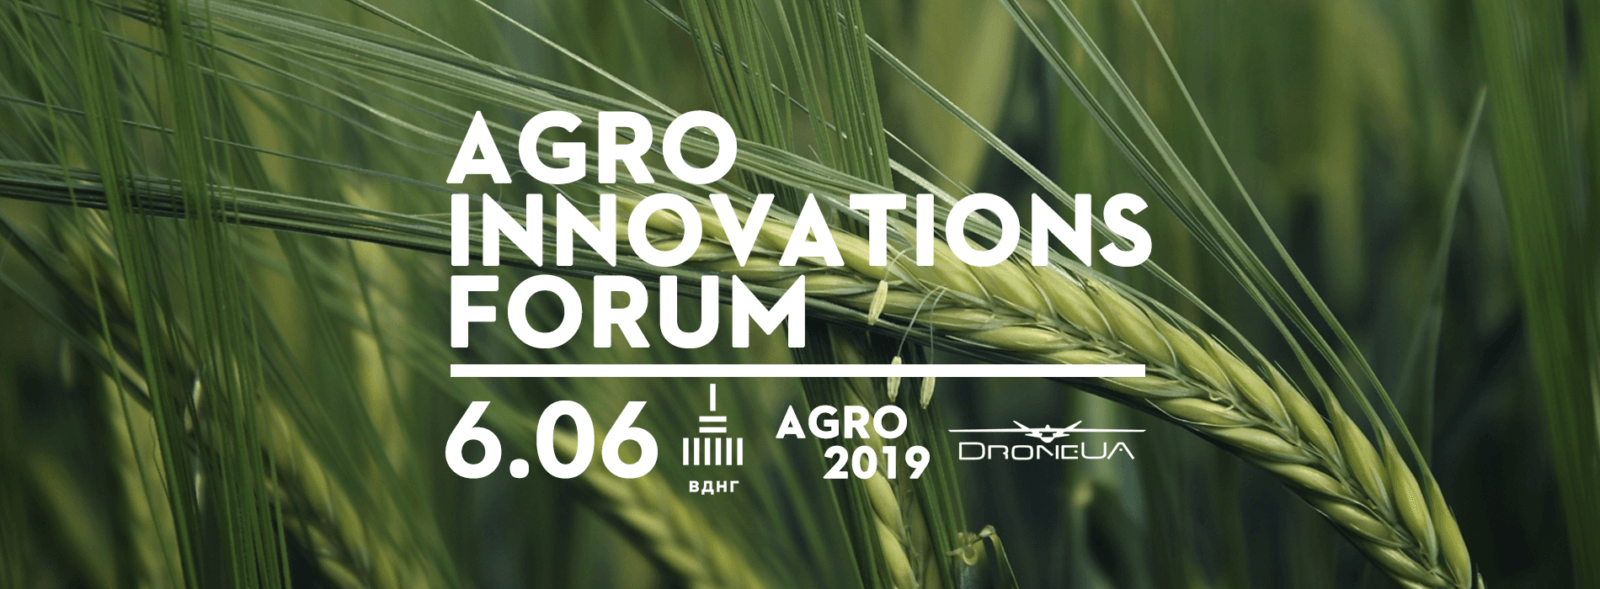 Програма форуму Agro Innovations Forum 2019